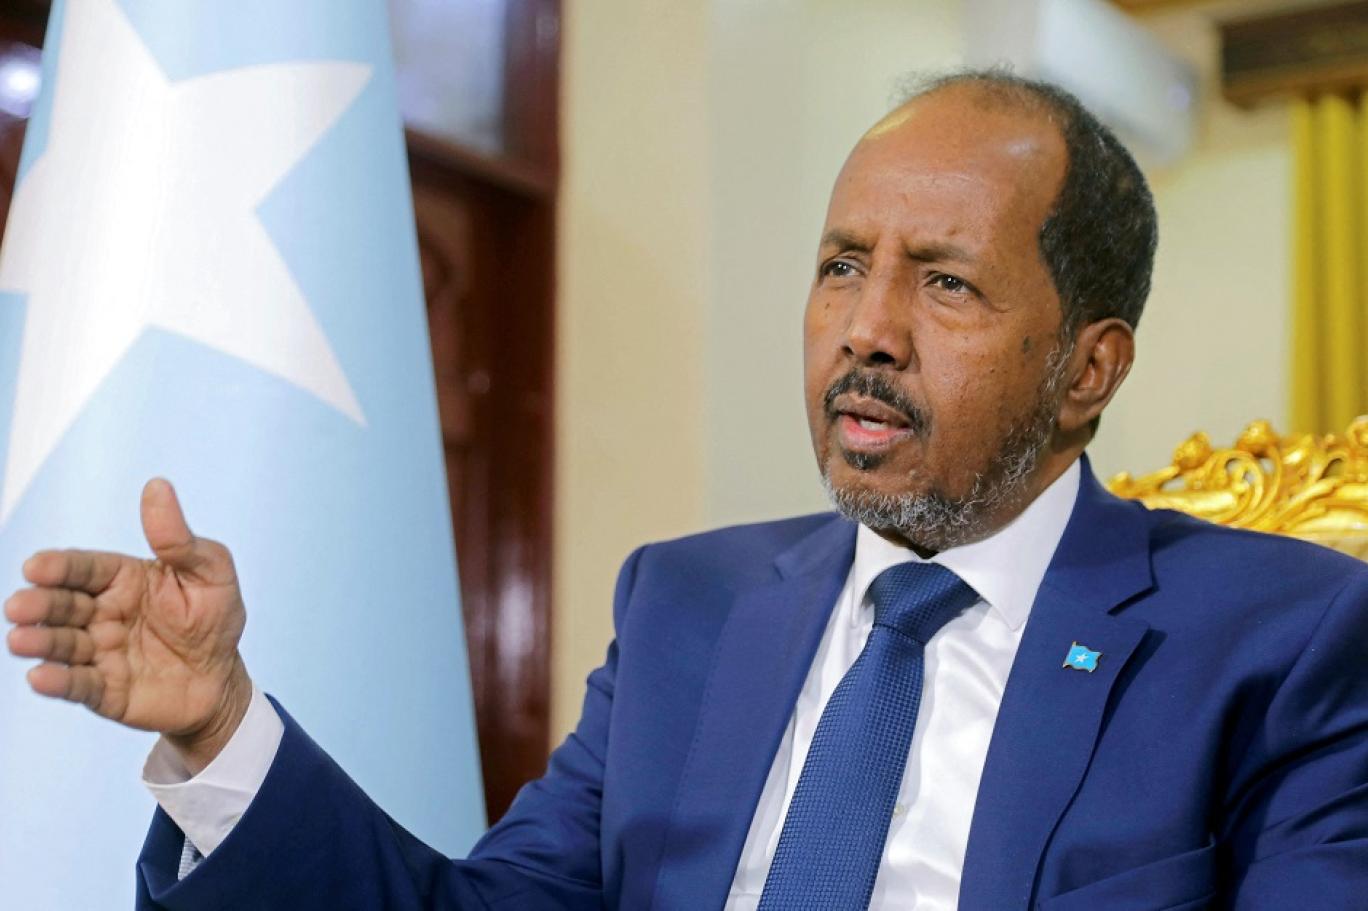 ما هي دوافع الصومال للانضمام إلى جماعة شرق أفريقيا؟￼